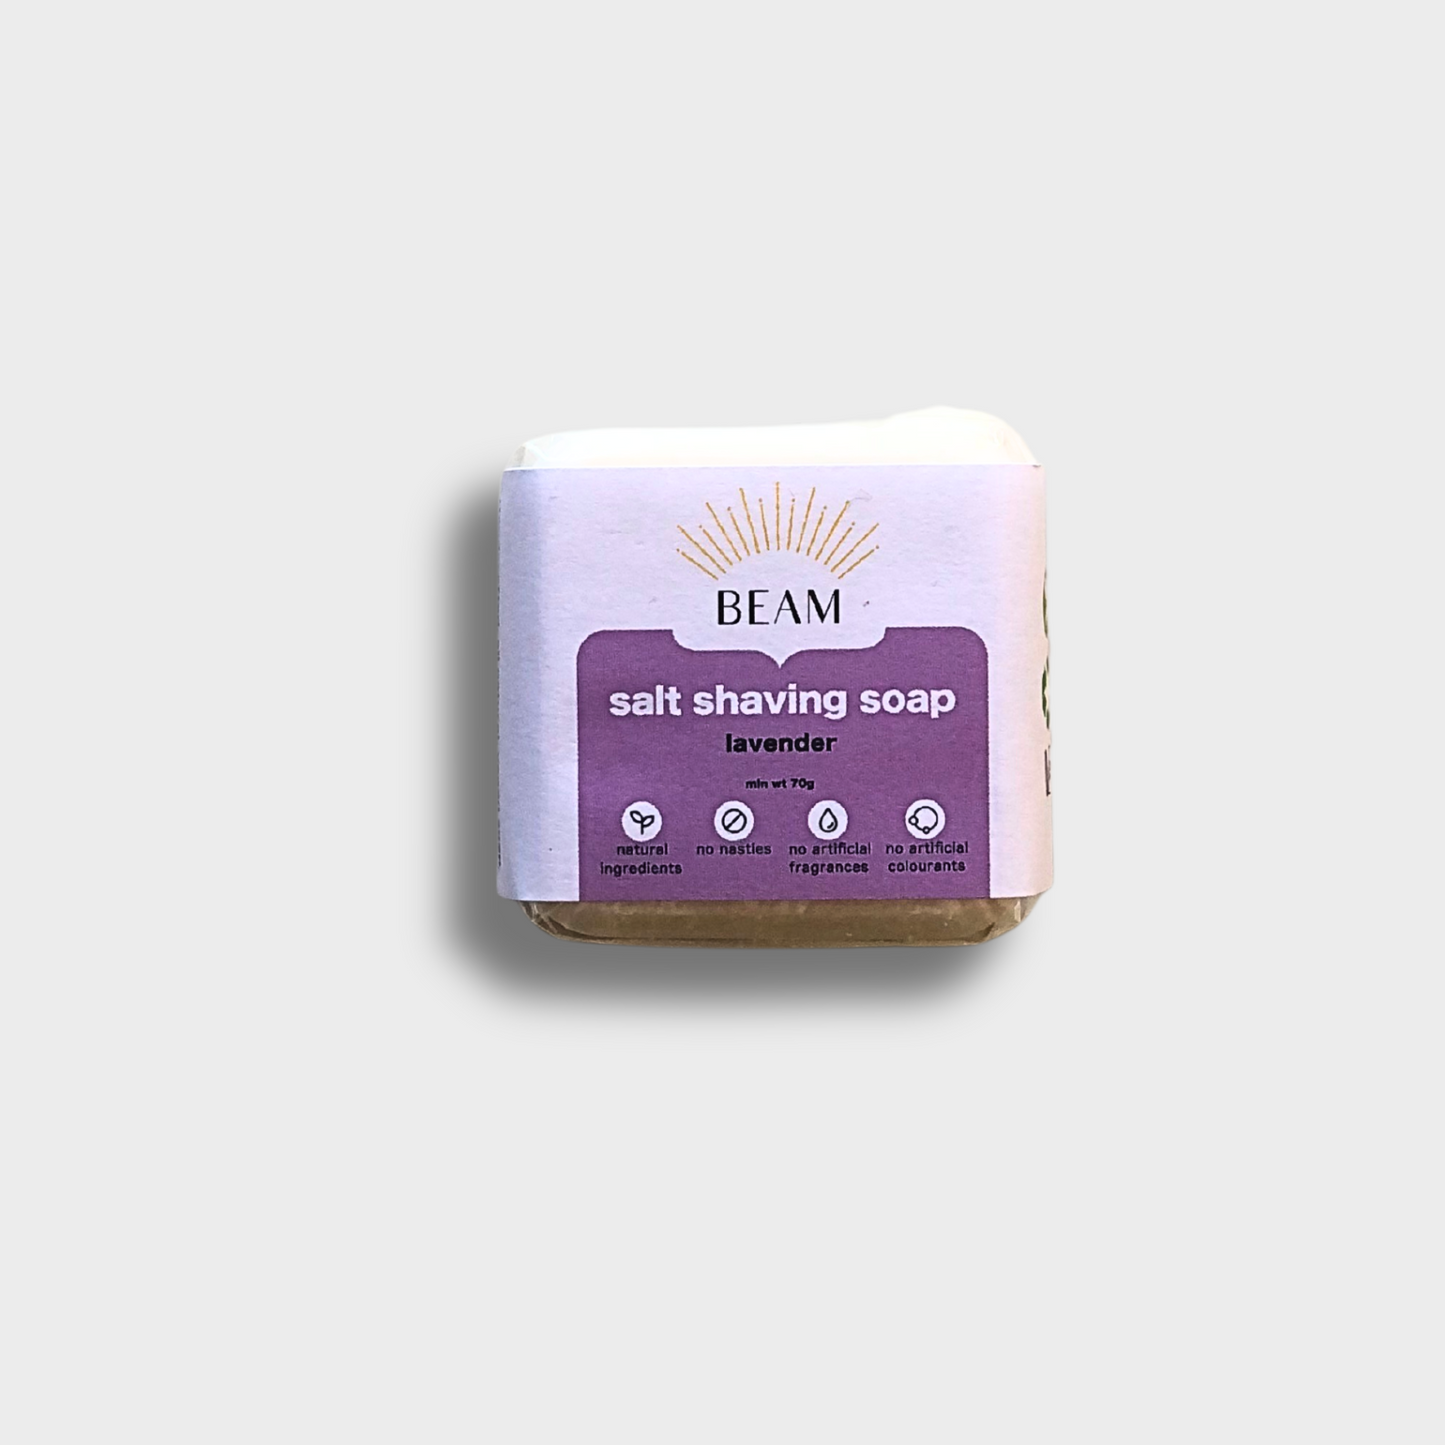 Salt Shaving Soap Bar - Beam - Vegan - 55g